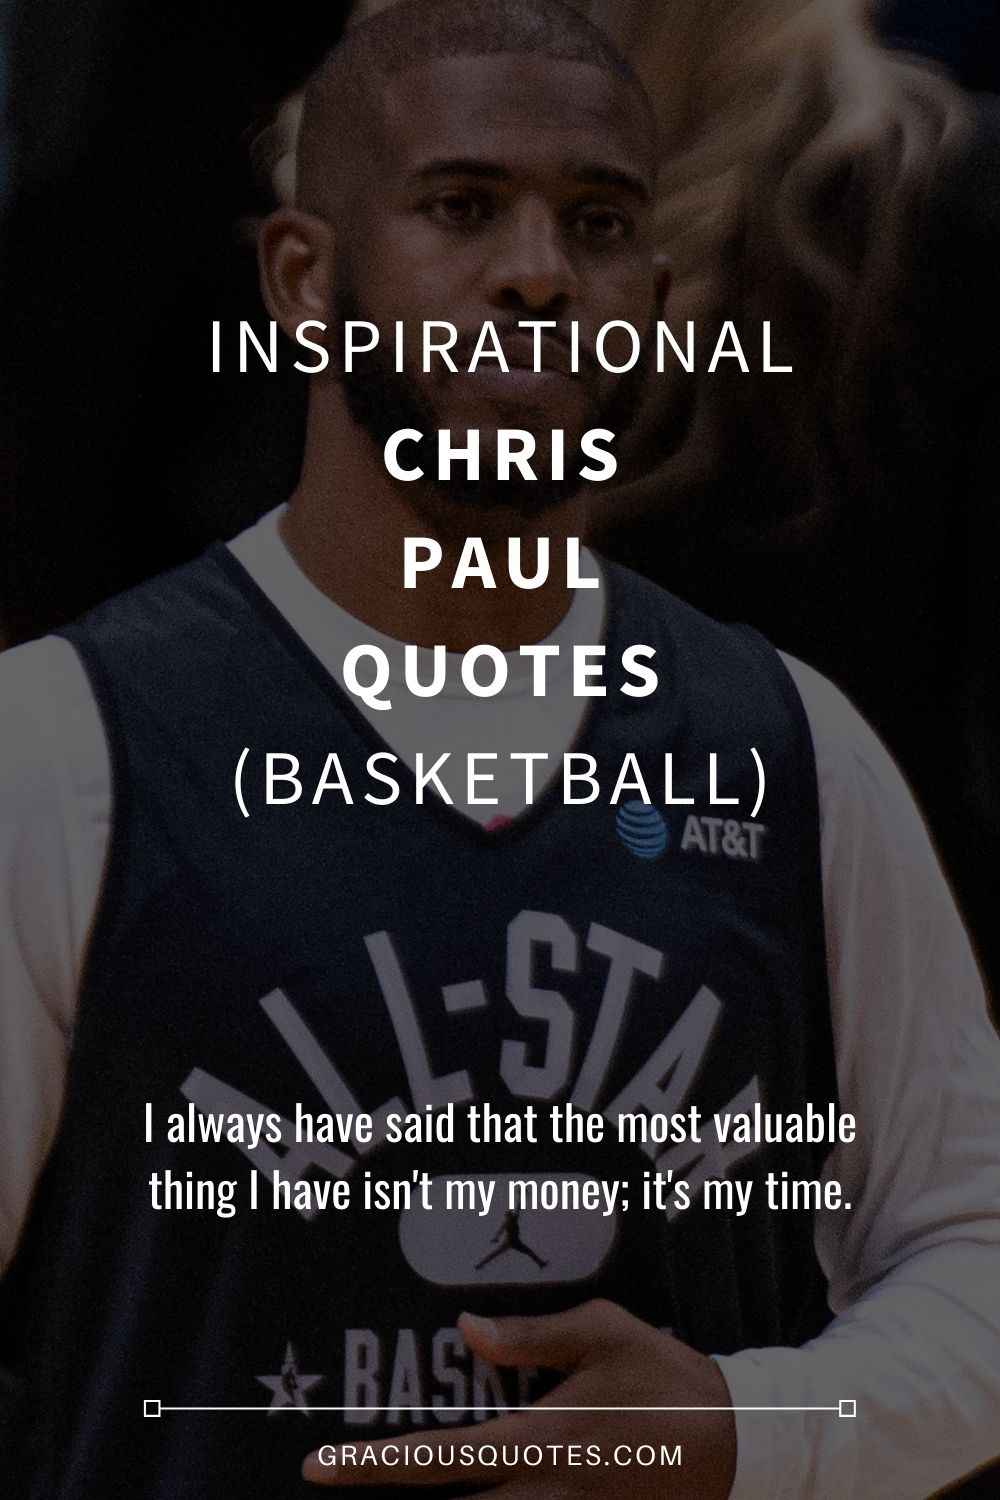 Inspirational Chris Paul Quotes (BASKETBALL) - Gracious Quotes